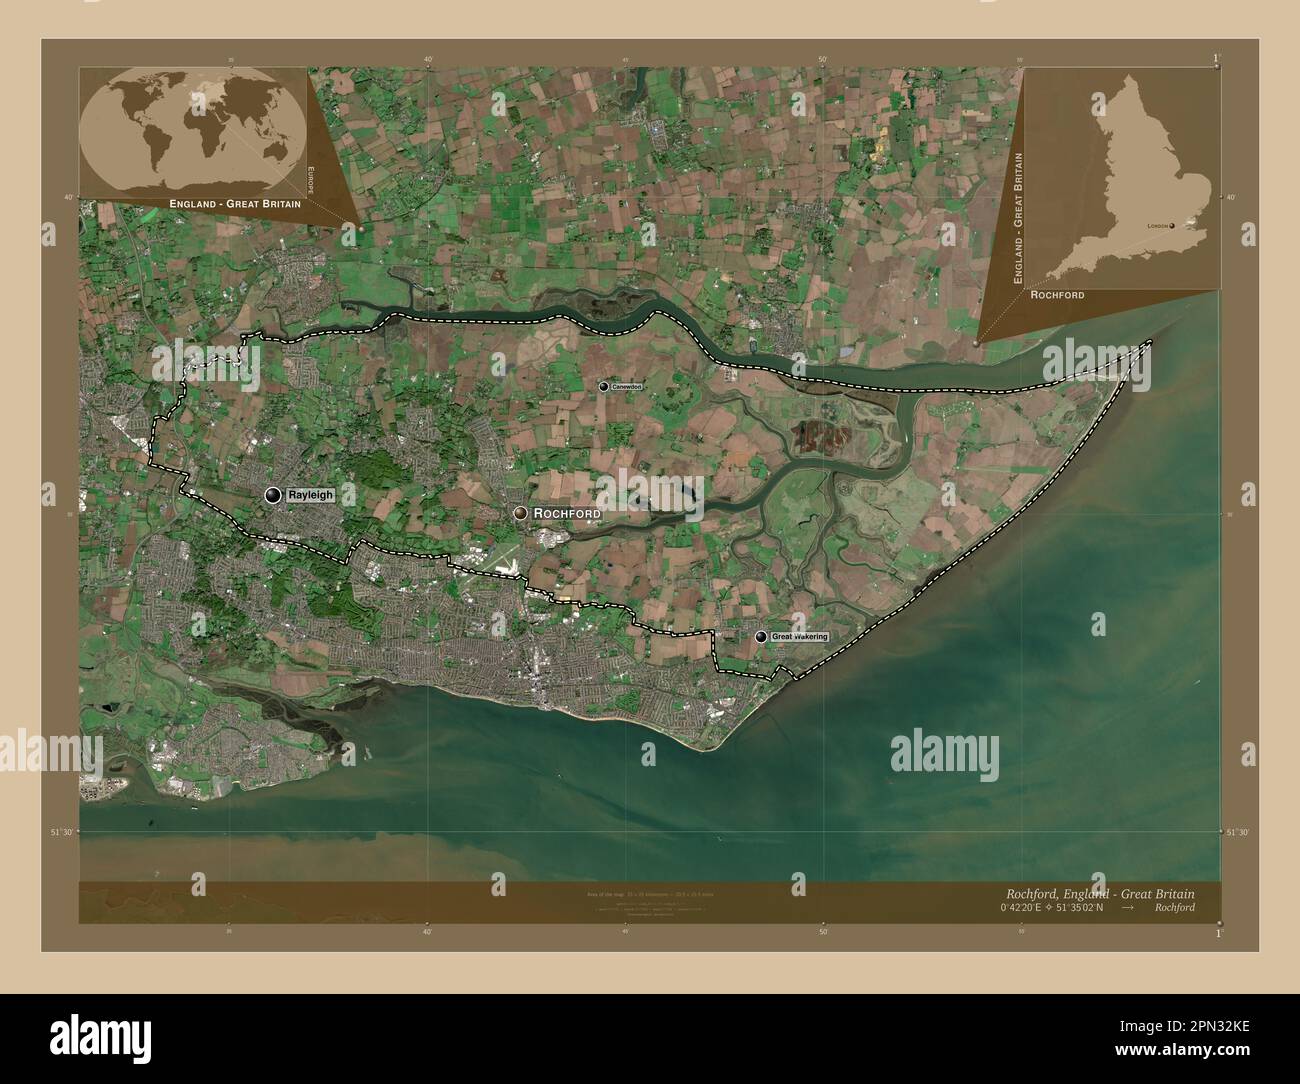 Rochford, nicht städtischer Bezirk von England - Großbritannien. Satellitenkarte mit niedriger Auflösung. Standorte und Namen der wichtigsten Städte der Region. Corne Stockfoto